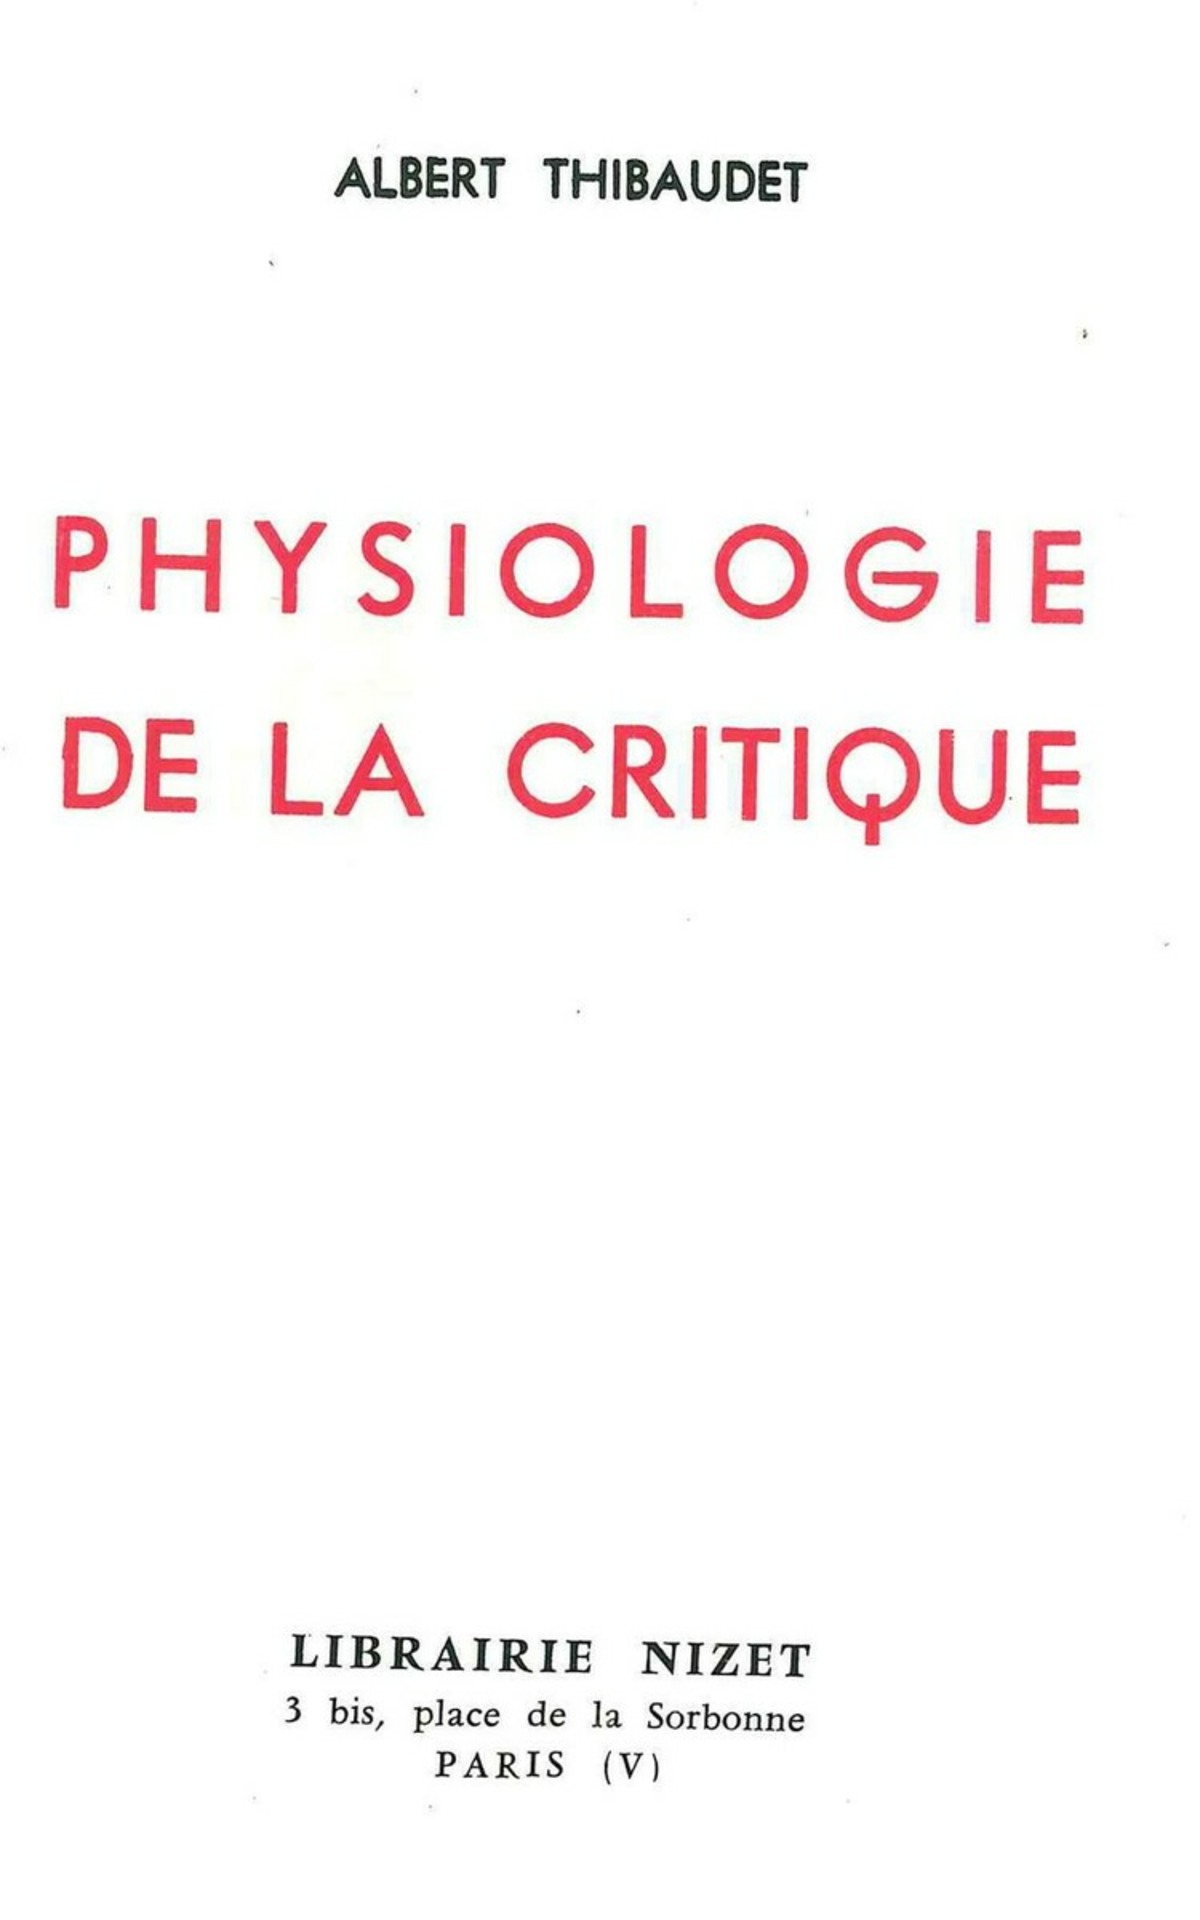 Physiologie de la critique